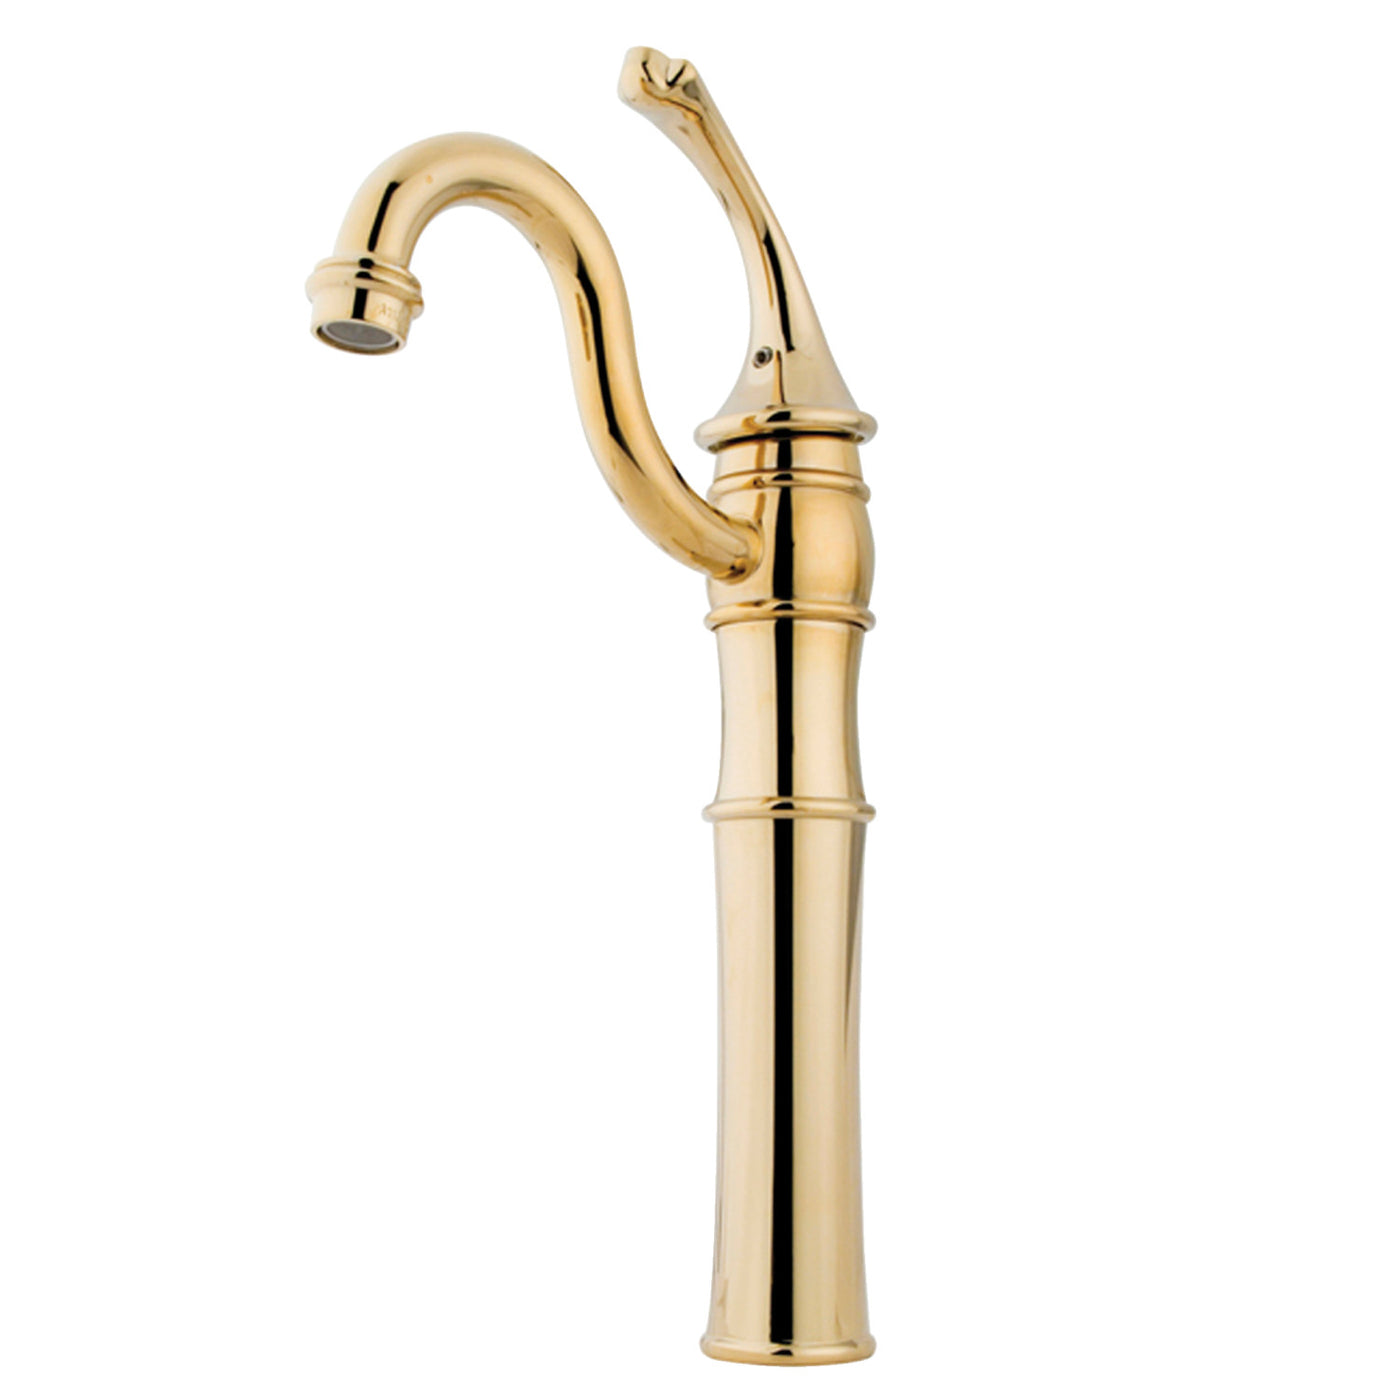 Elements of Design EB3422GL Vessel Sink Faucet, Polished Brass